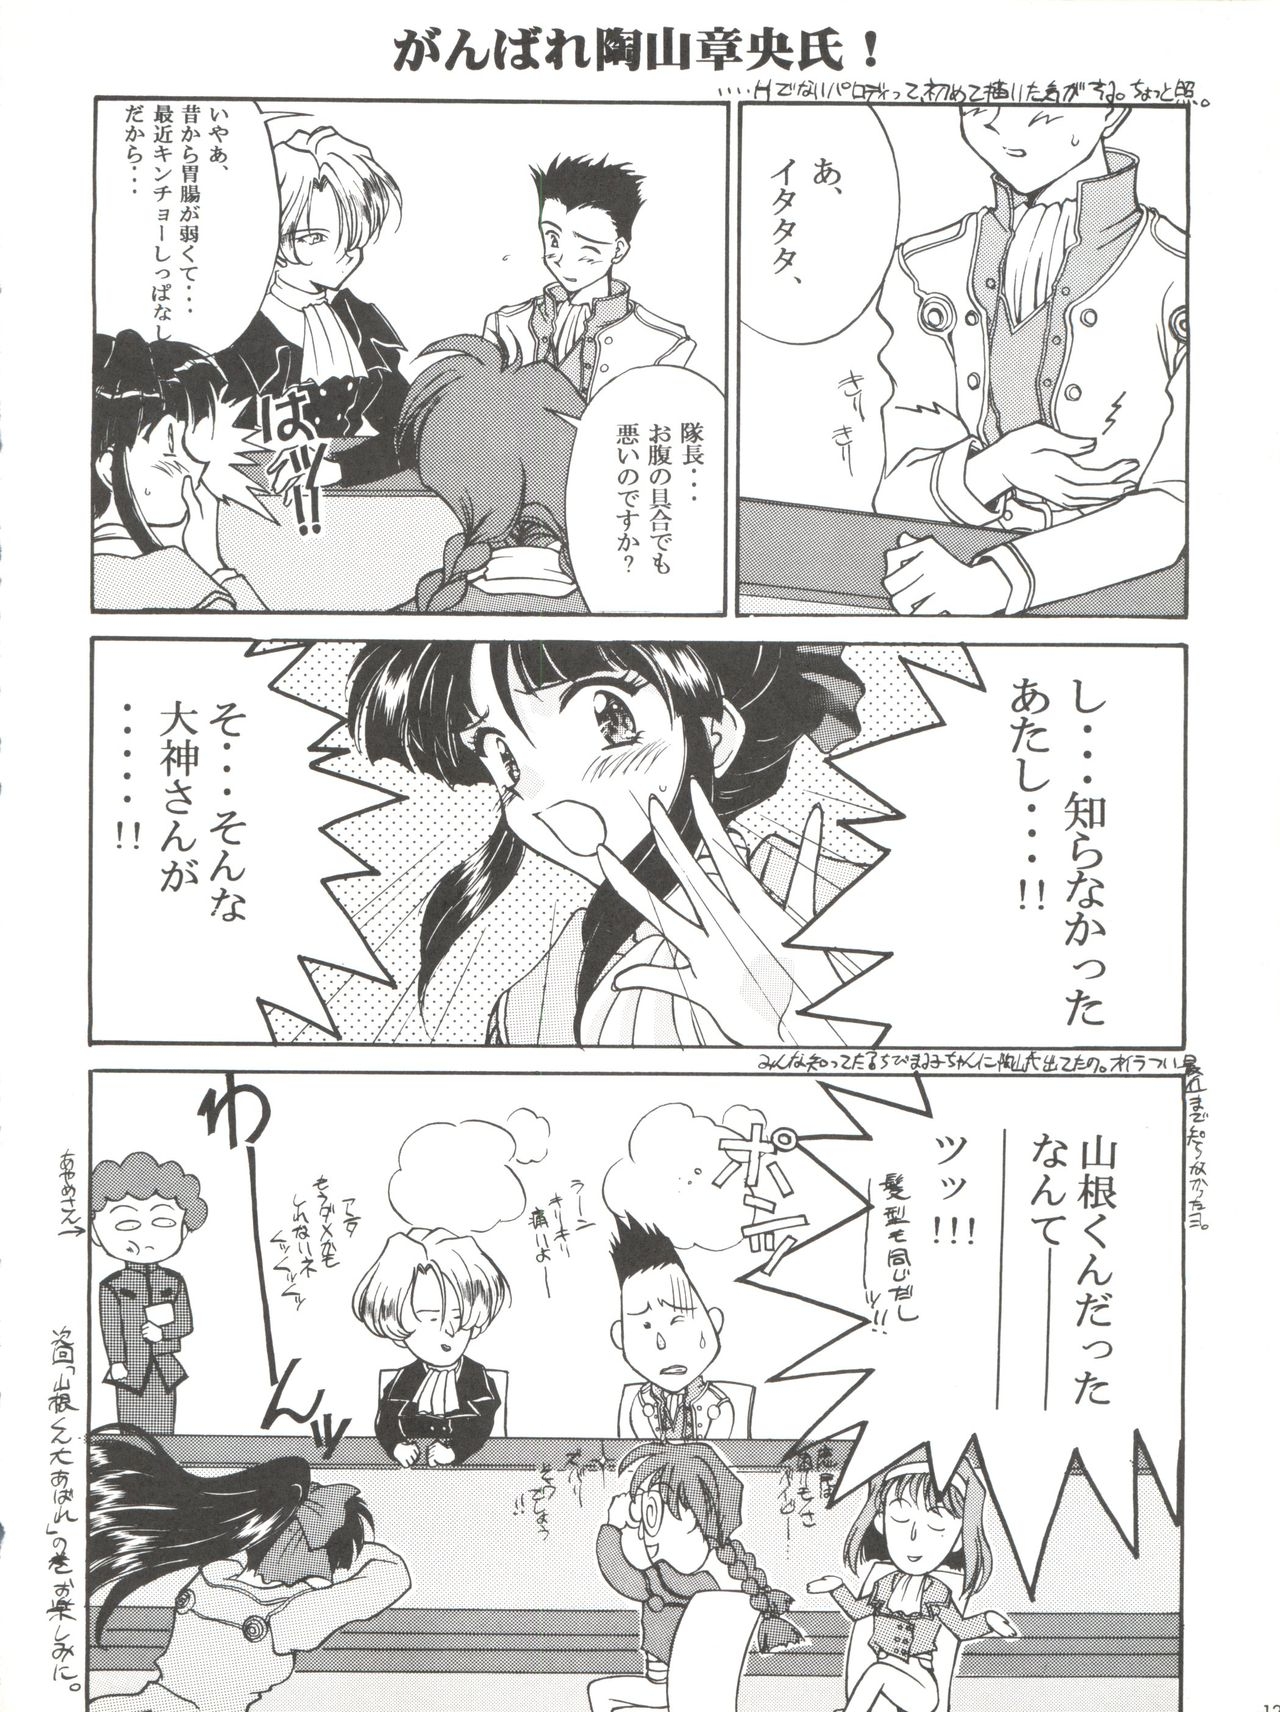 [LUCK&PLUCK!Co. (Amanomiya Haruka)] Li Kohran no Gottsuee Kanji (Sakura Wars) [1997-05-25] 12